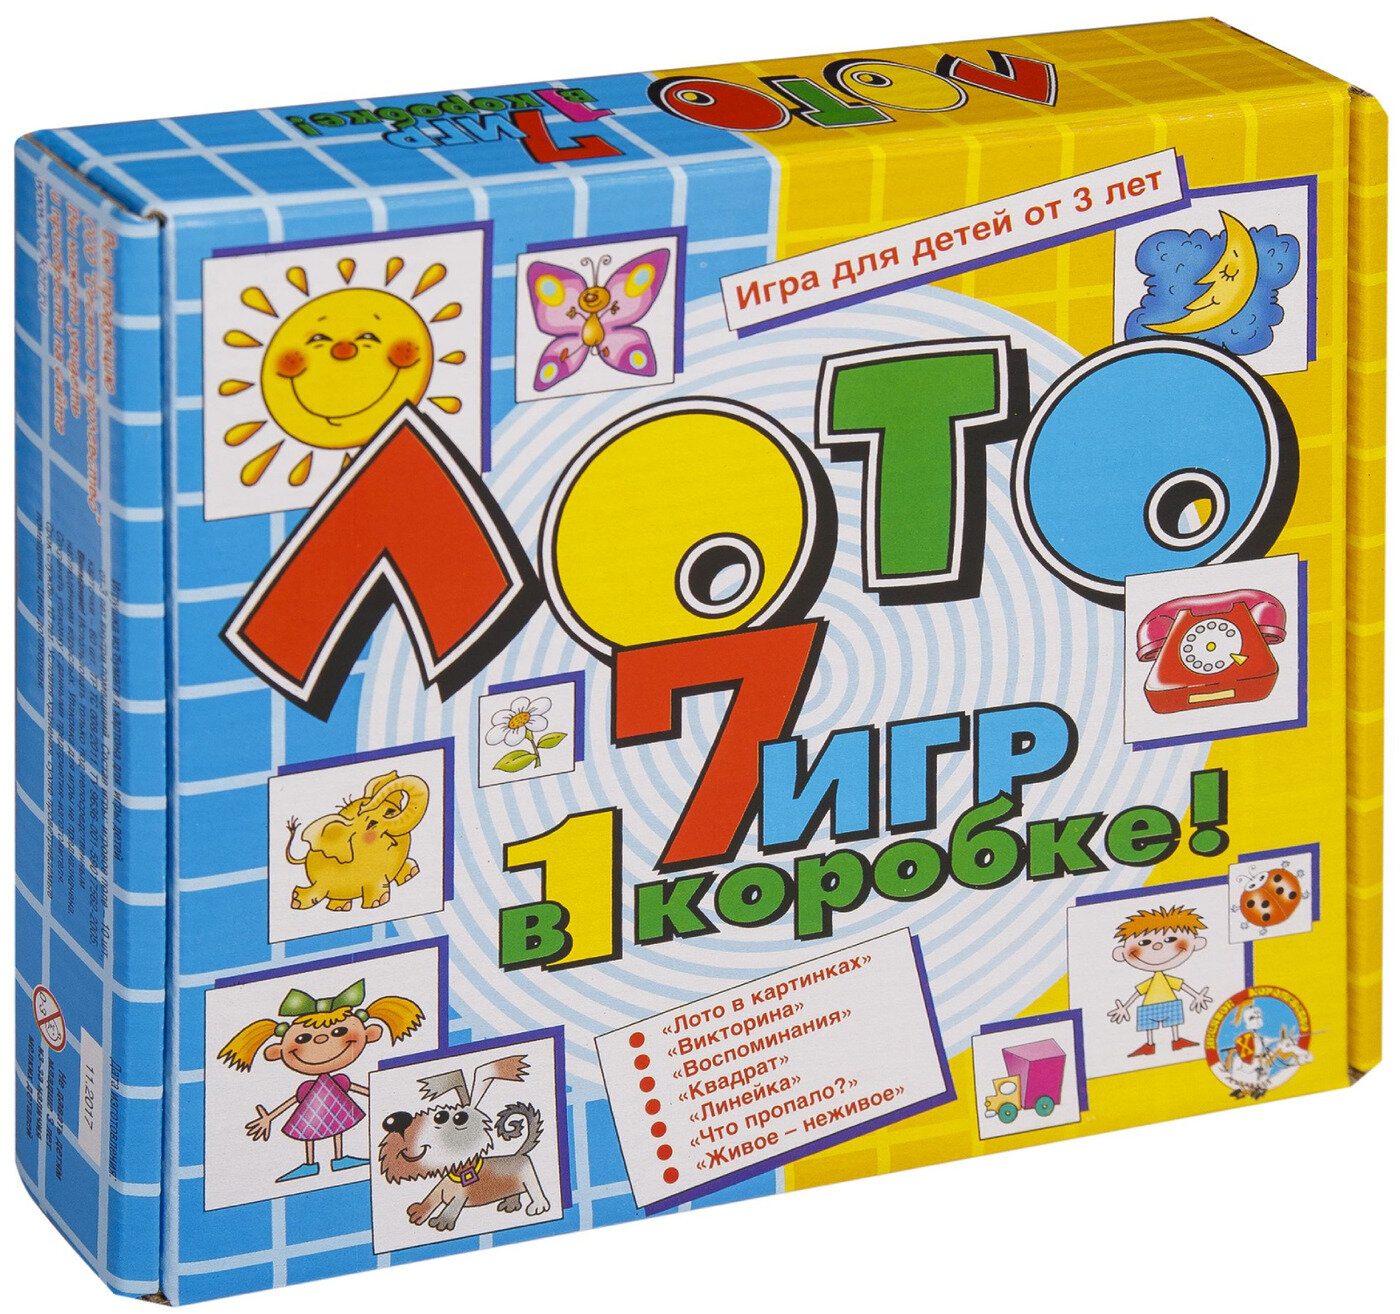 Детское лото с картинками "7 в 1" большое, игровой набор из 7 развивающих настольных игр